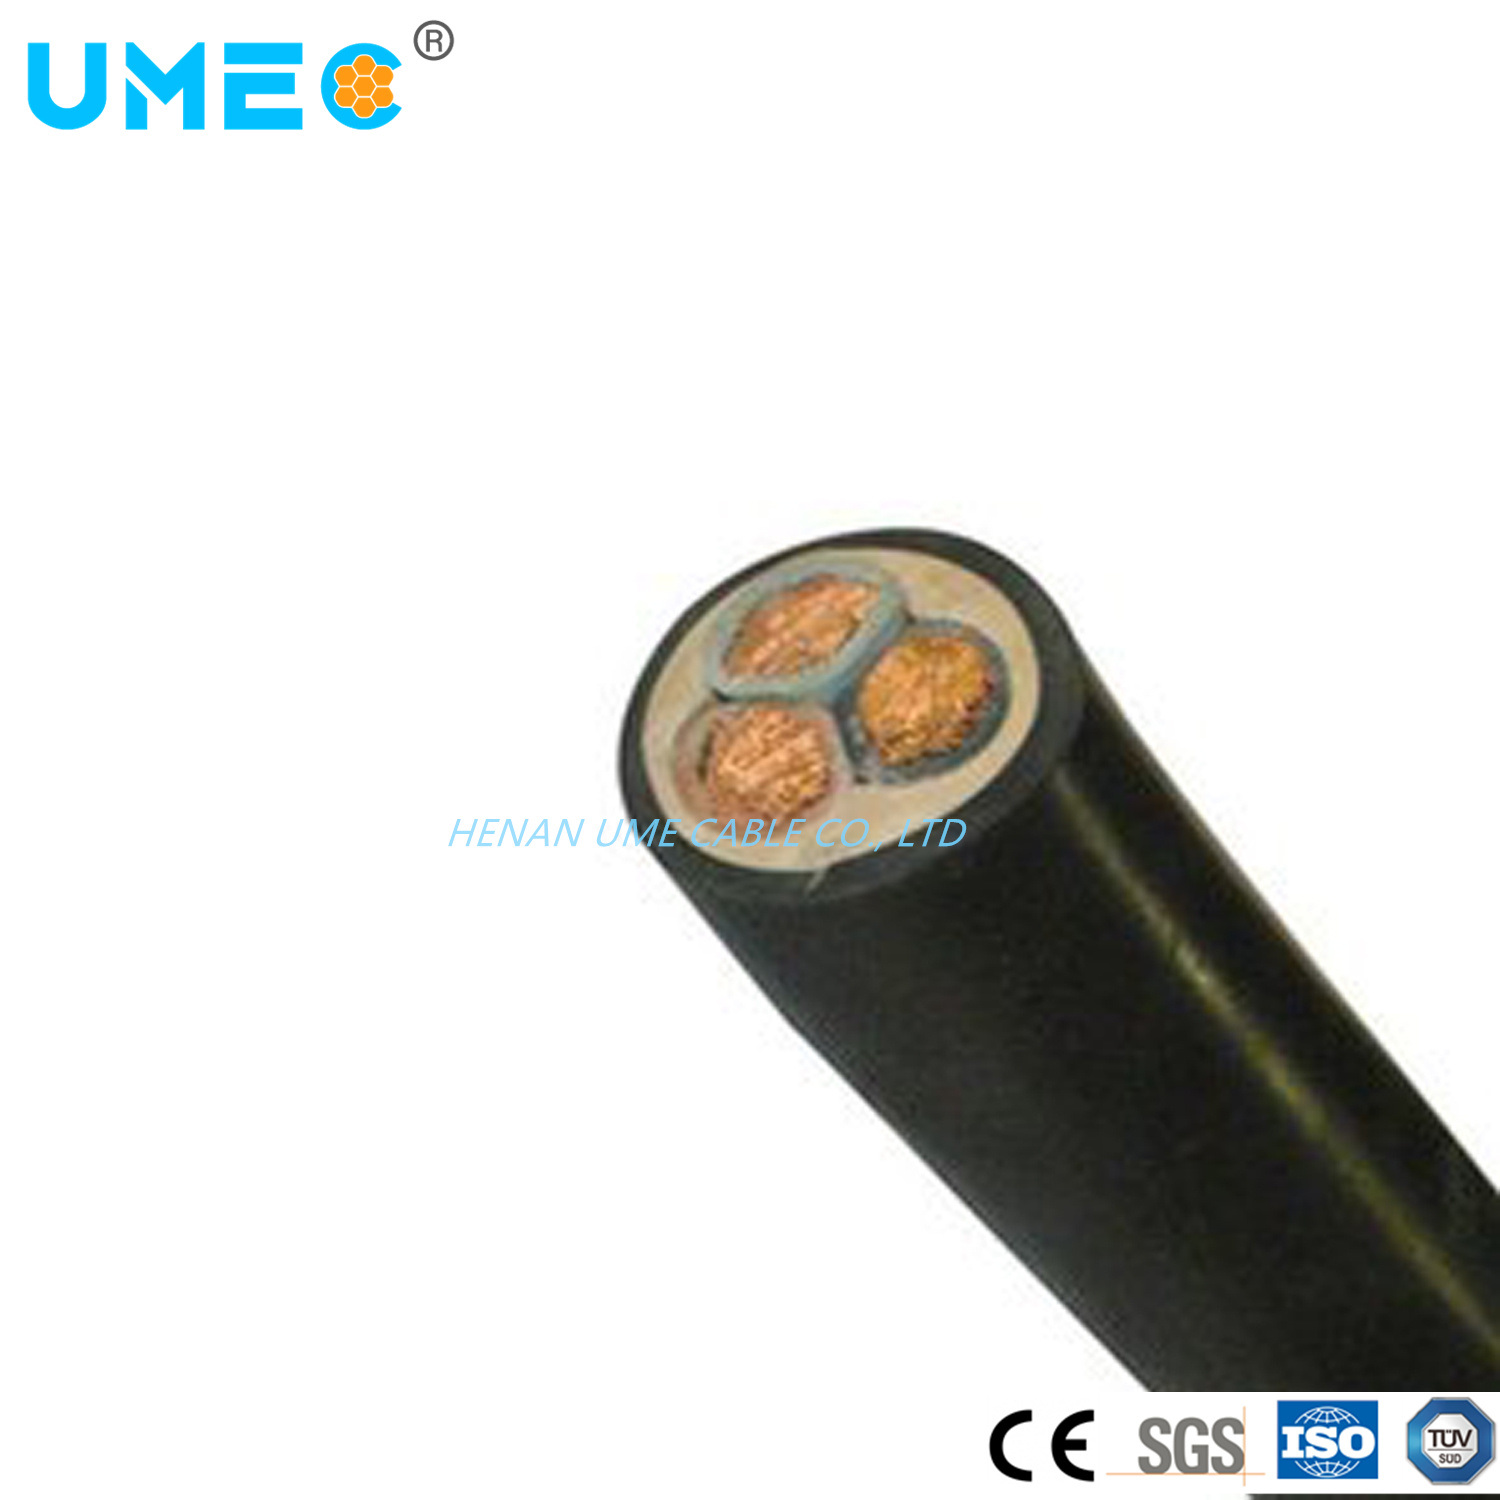 
                IEC GB Standard Kupferleiter EPR Isolierung Gummiummantelung Kabel
            